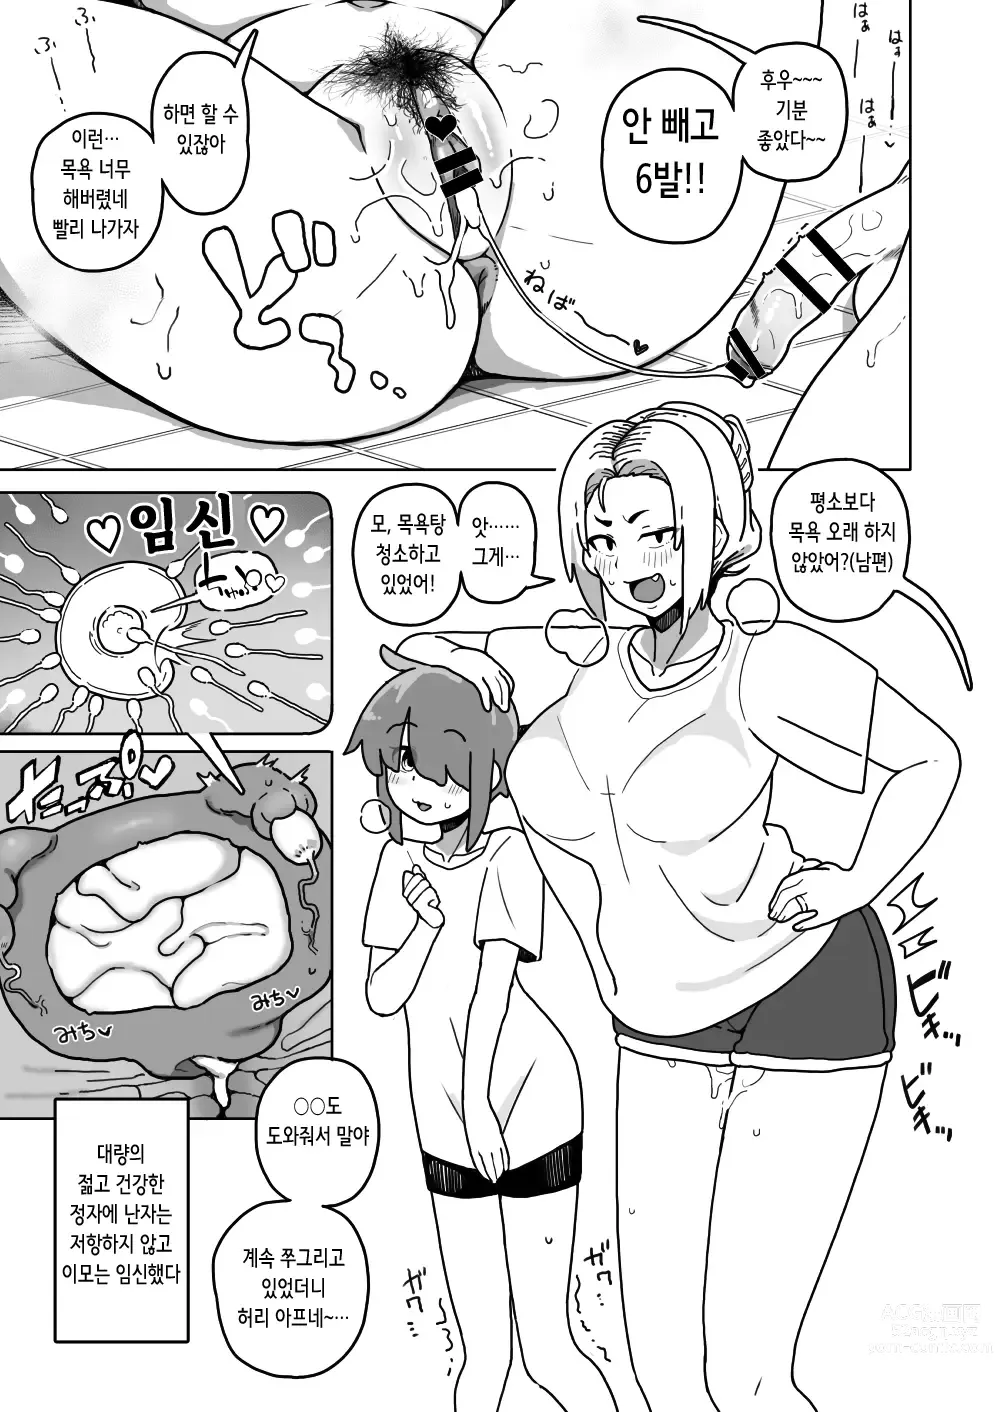 Page 11 of doujinshi 엄마 나이 대의 마마와 노콘 섹스해서 임신시켜버리는 책